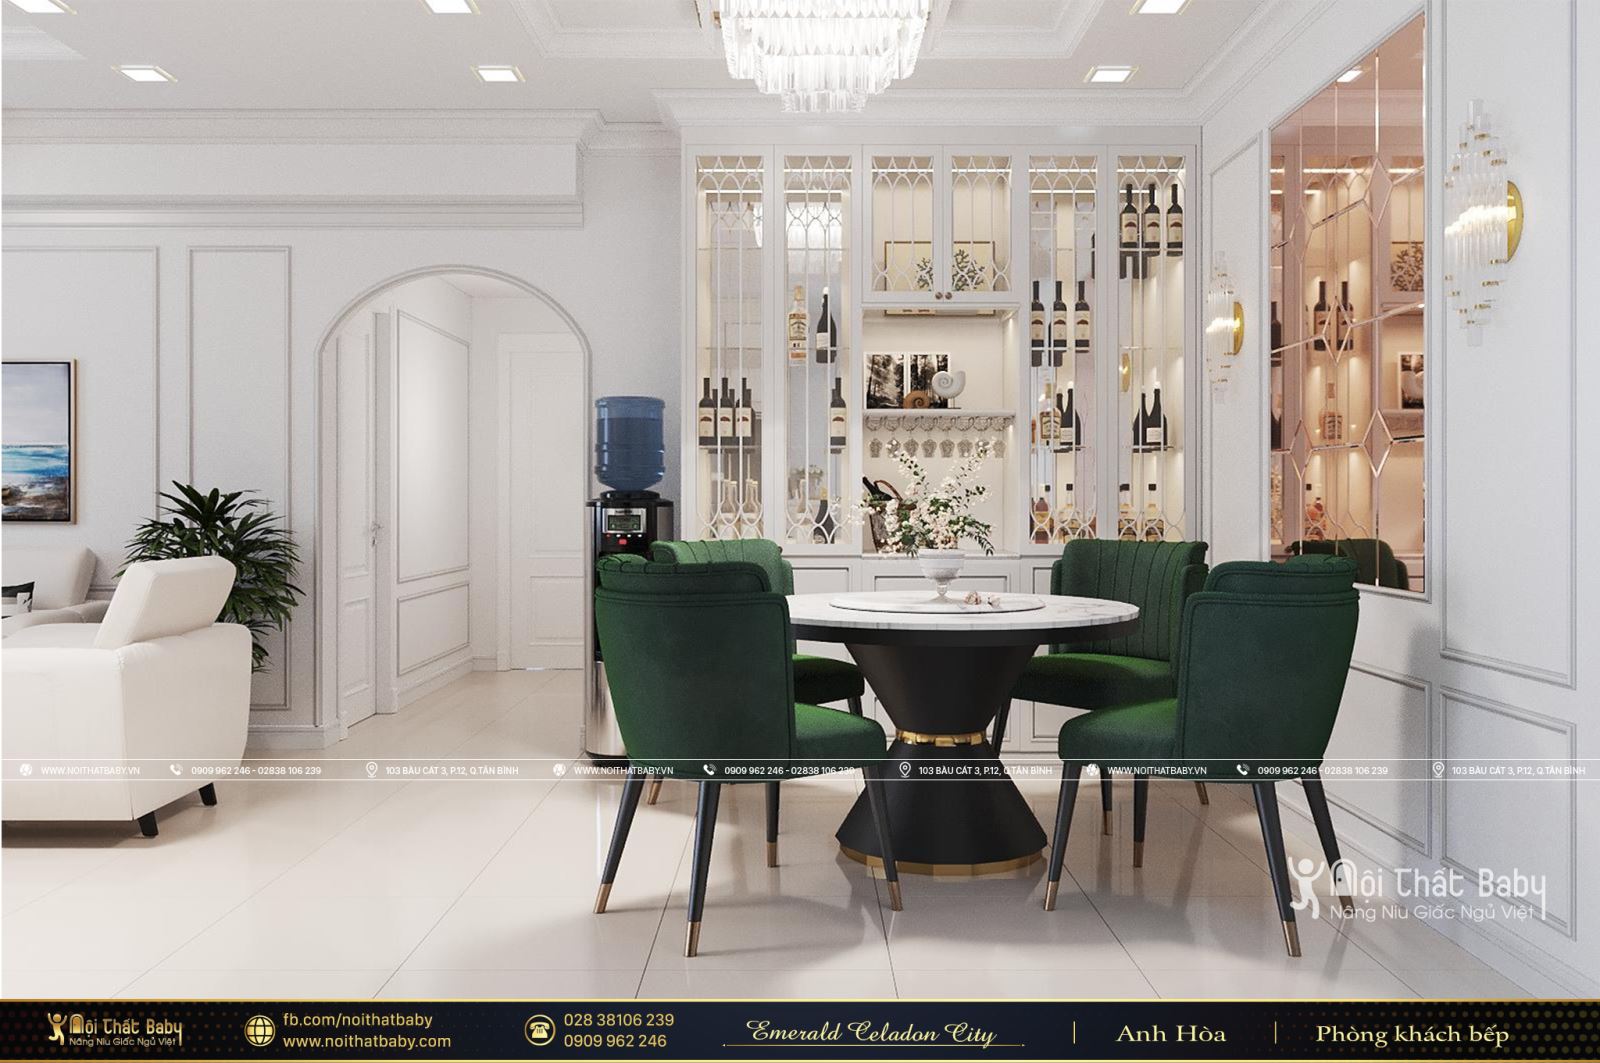 Tổng hợp các mẫu thiết kế nội thất Chung cư Emerald Celadon City